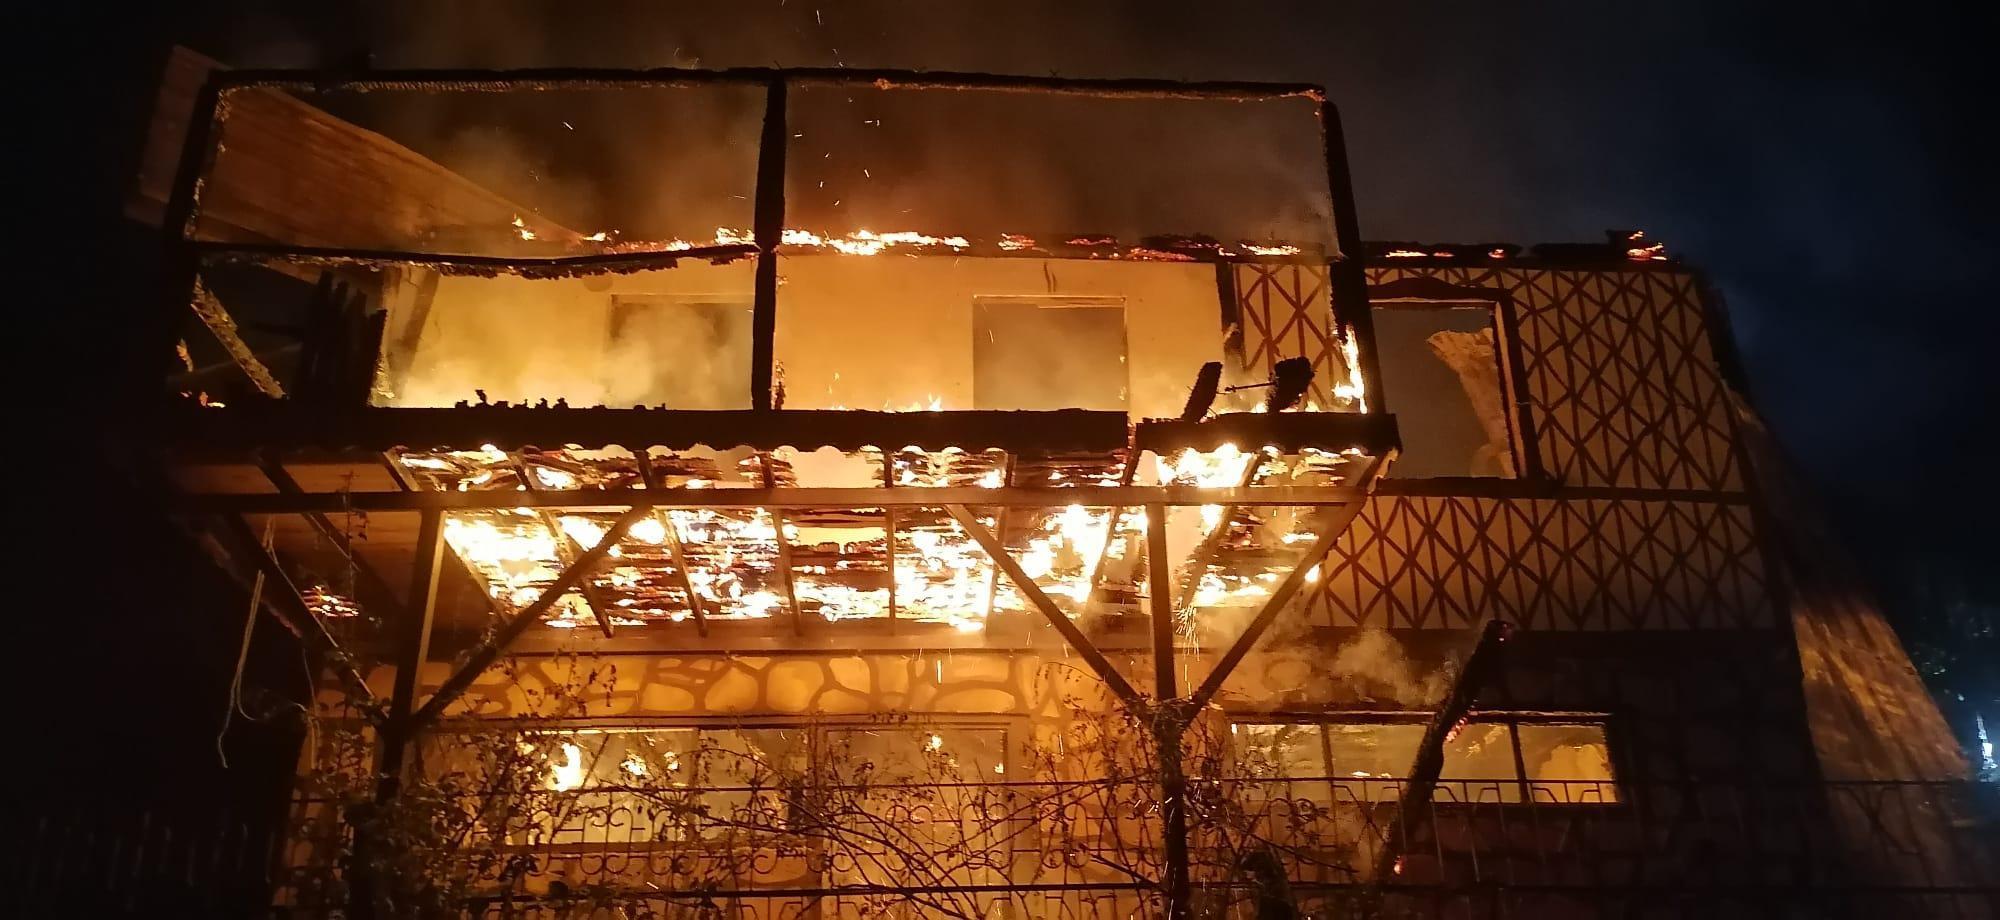 Çevreci ressamın basın açıklaması öncesi yanan evine ‘kundaklama’ şüphesi